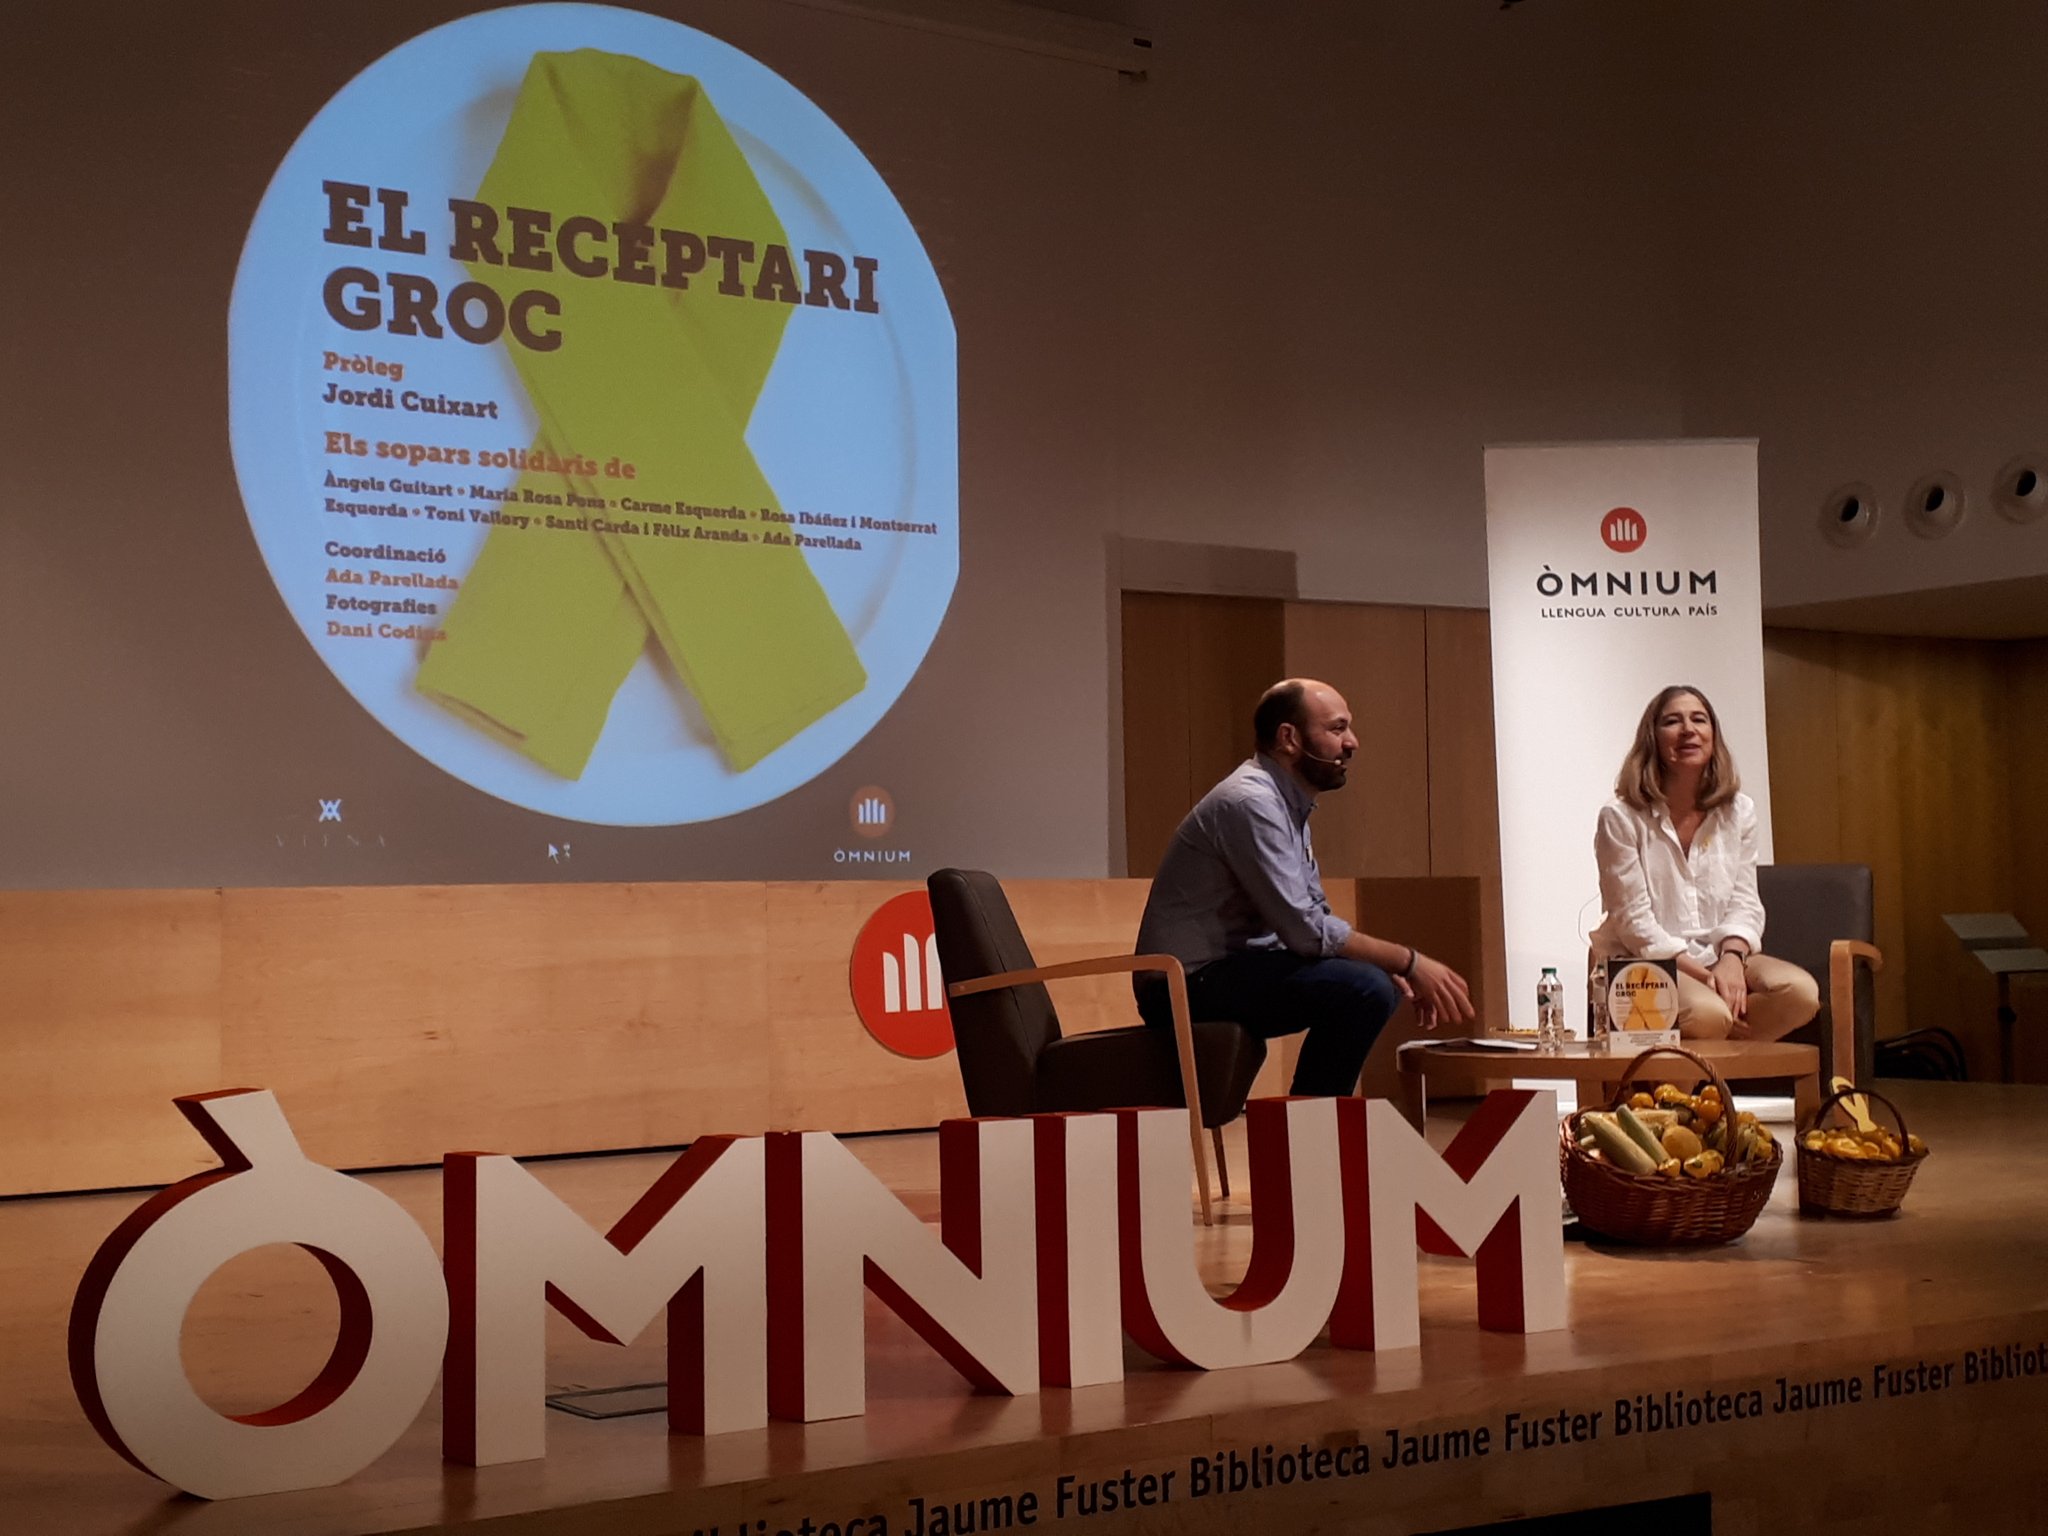 'El receptari groc': Ada Parellada y el mundo de la cocina, con los presos políticos